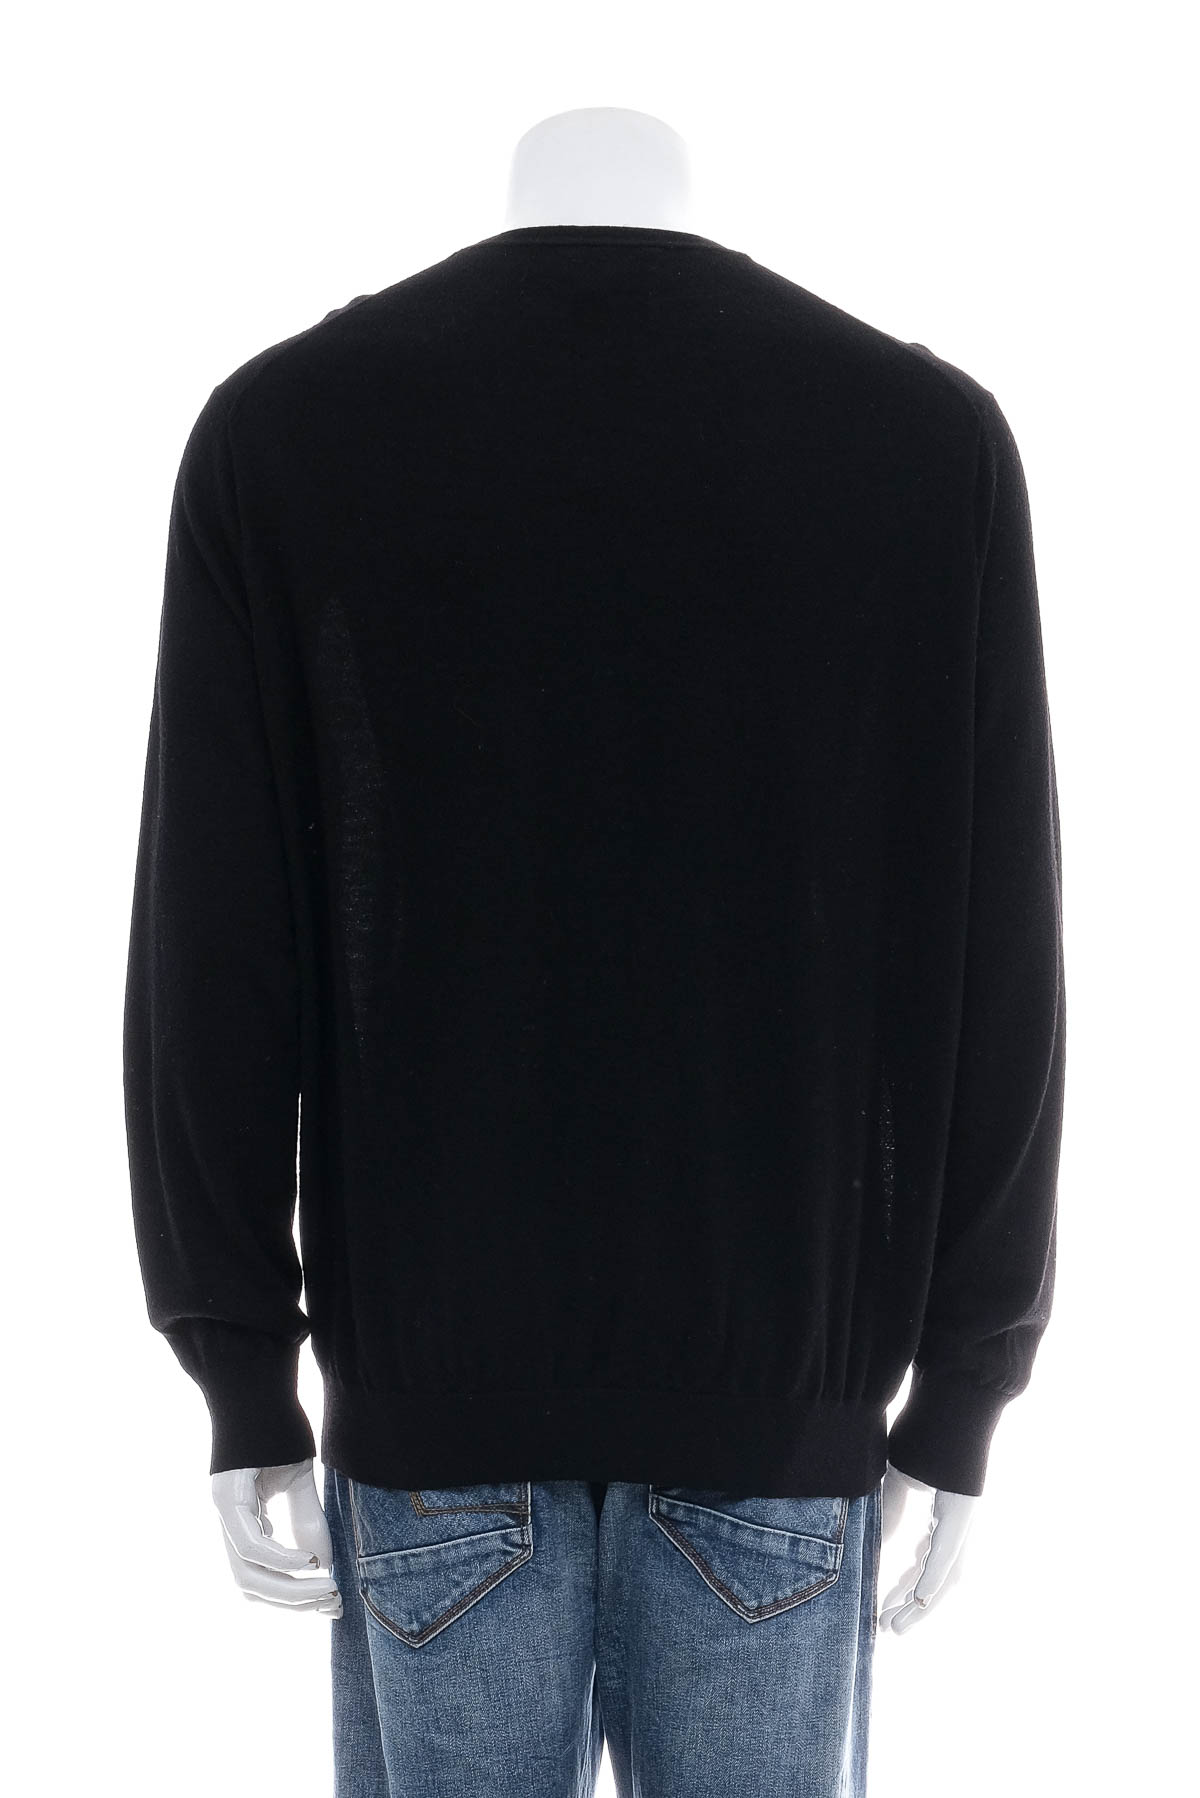 Men's sweater - POLO RALPH LAUREN - 1